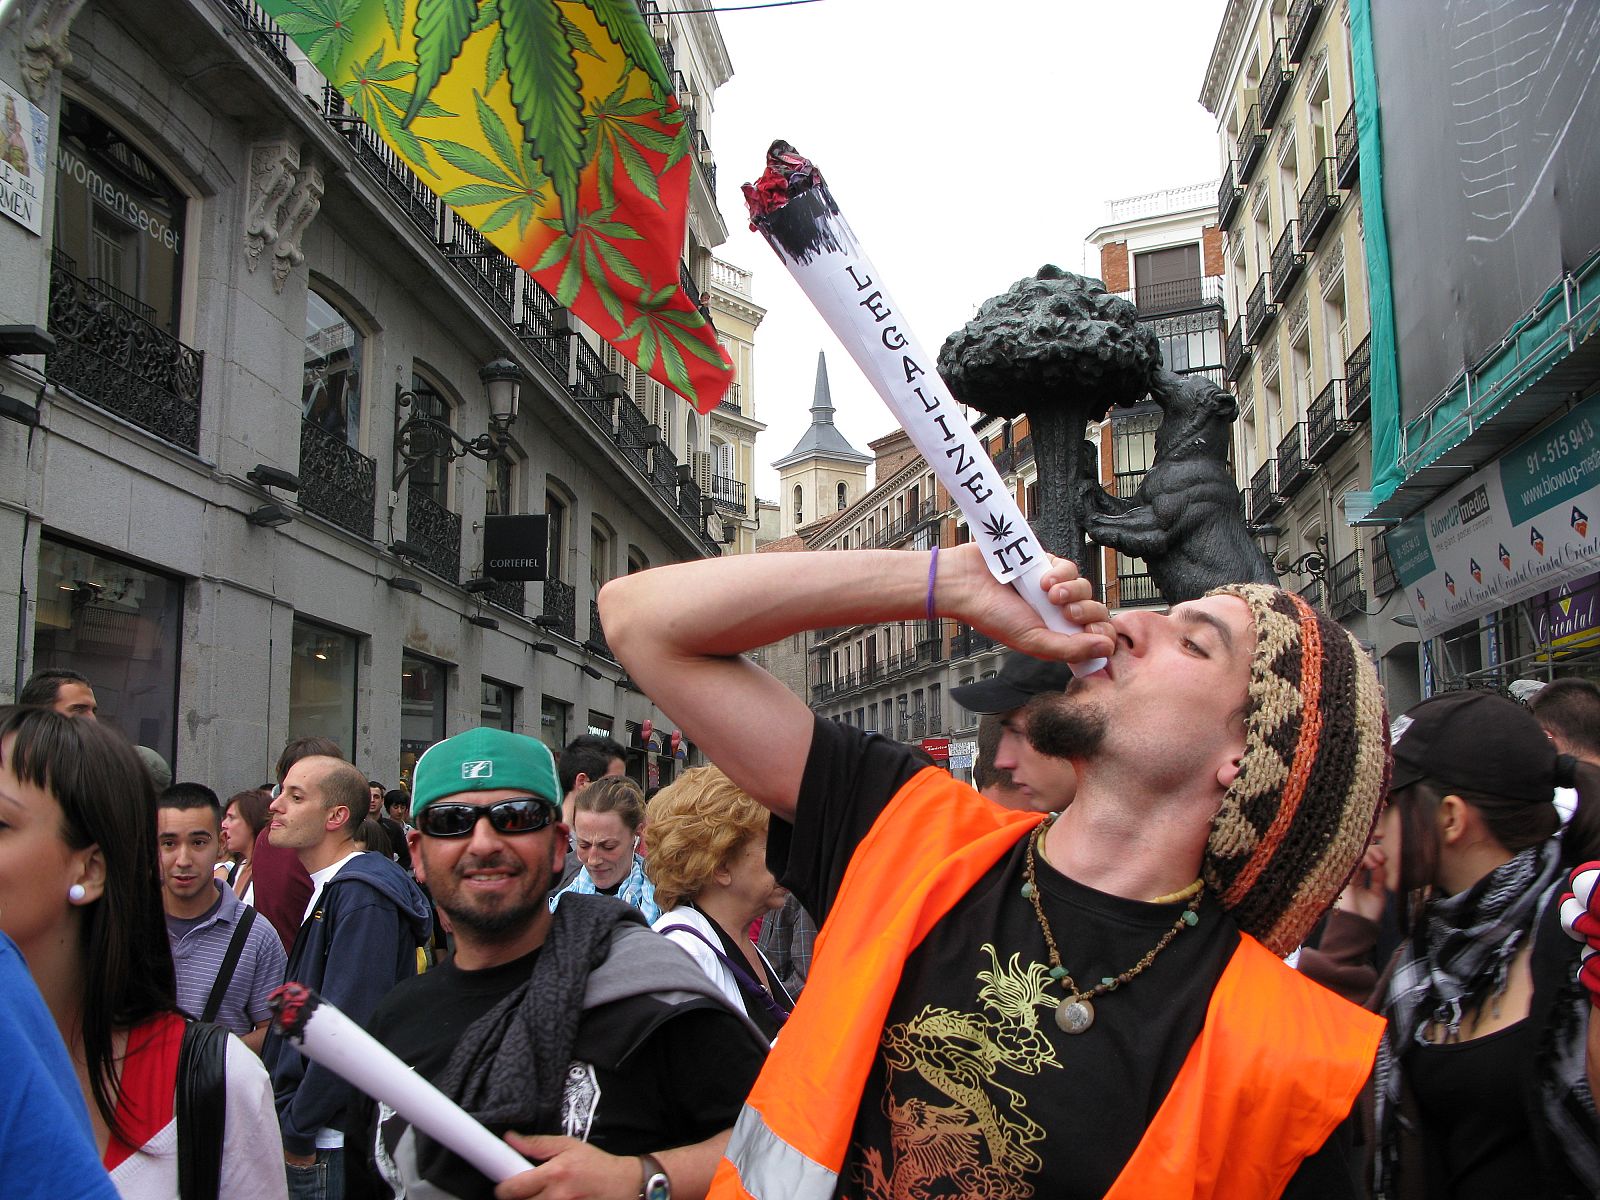 Los manifestantes piden que se despenalice el consumo de cannabis y marihuana.